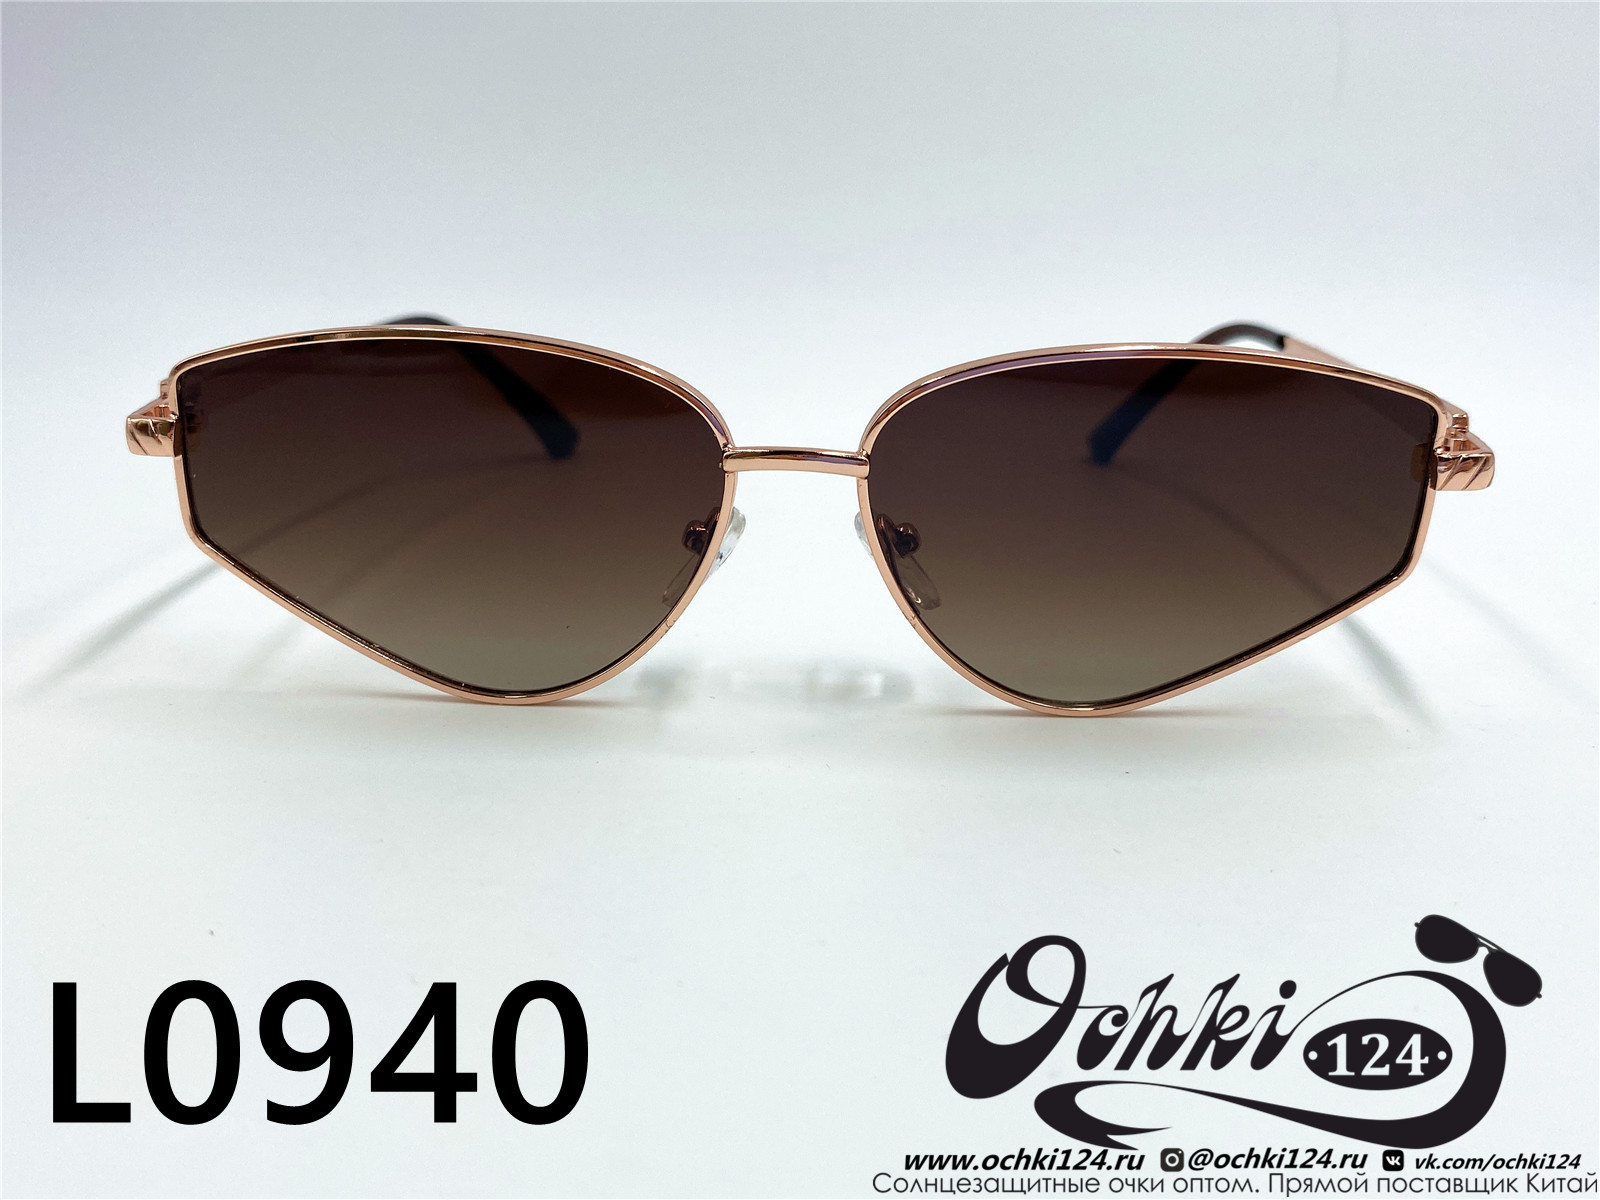  Солнцезащитные очки картинка 2022 Женские Лисички L0940-2 